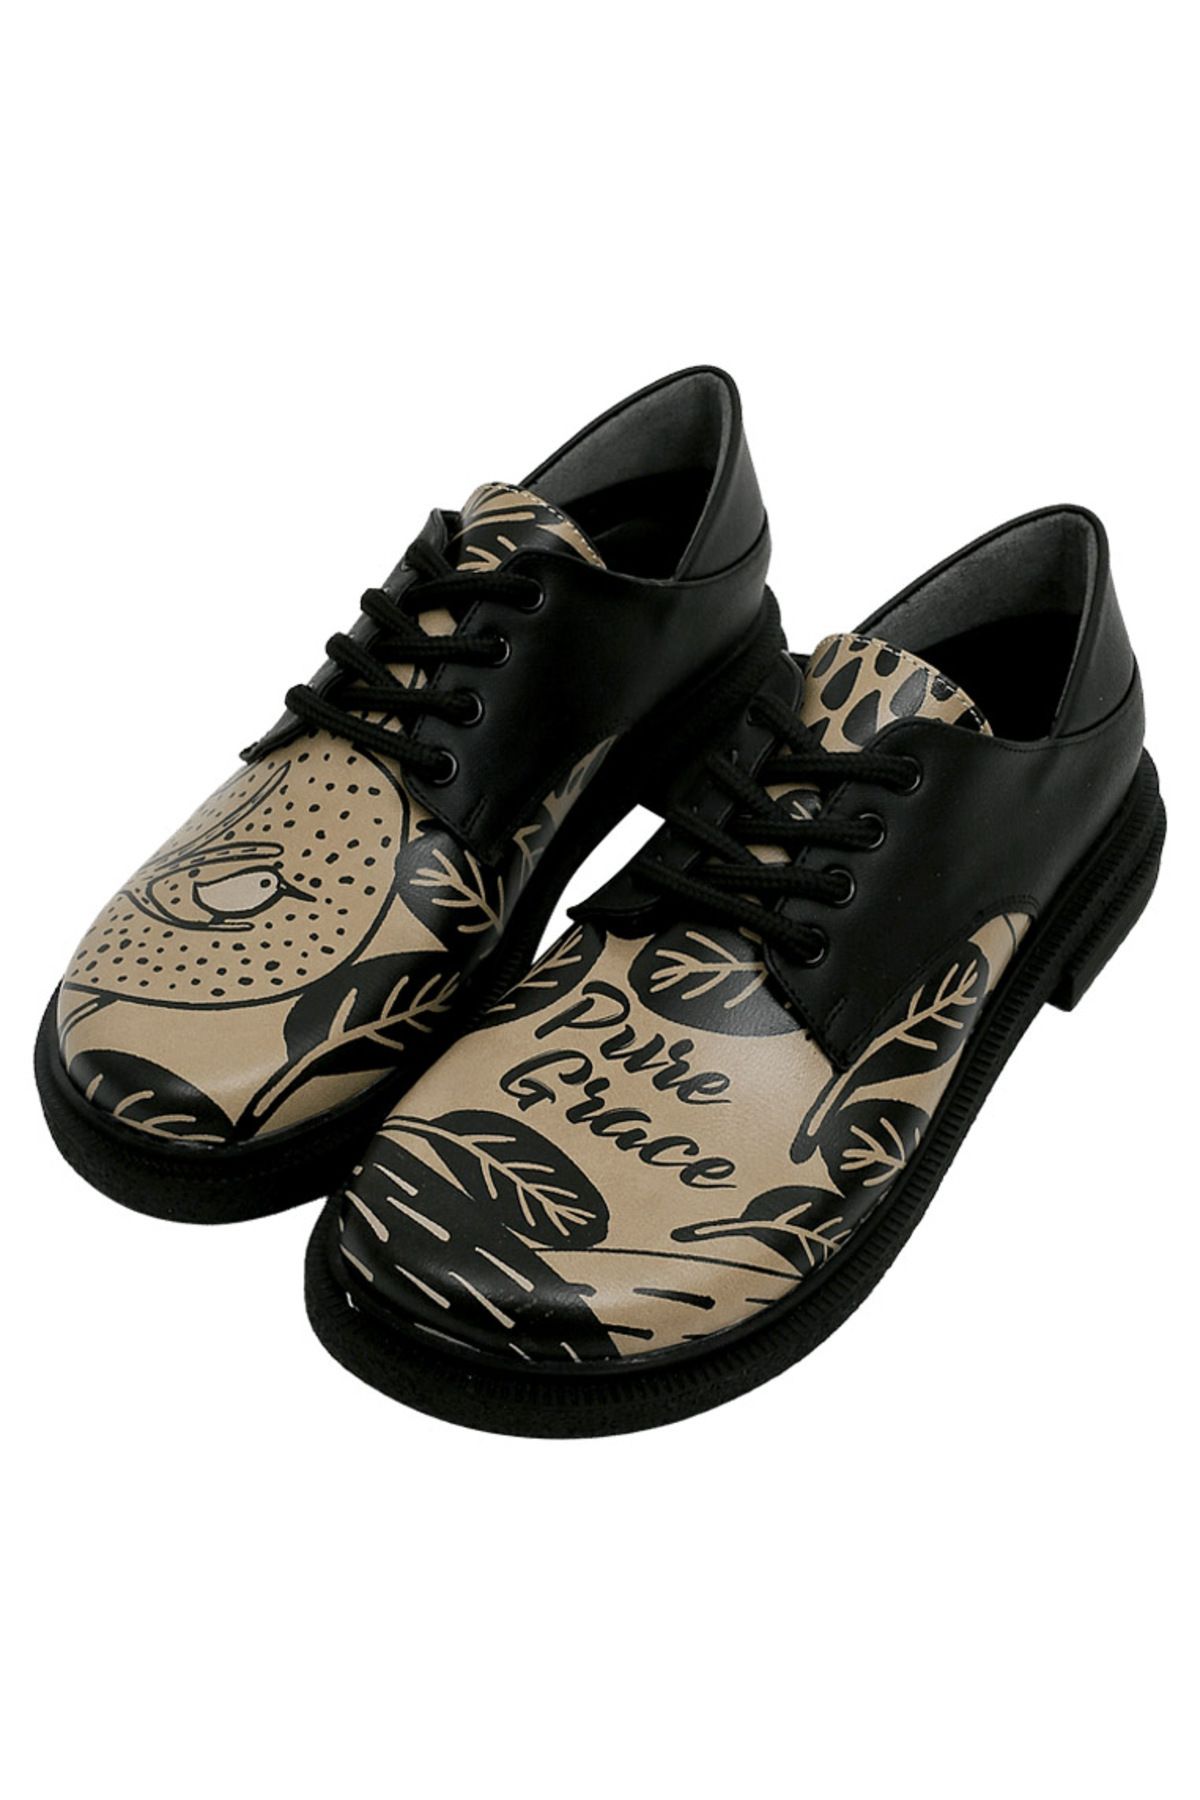 Dogo Kadın Vegan Deri Siyah Günlük Ayakkabı - Pure Grace Tasarım